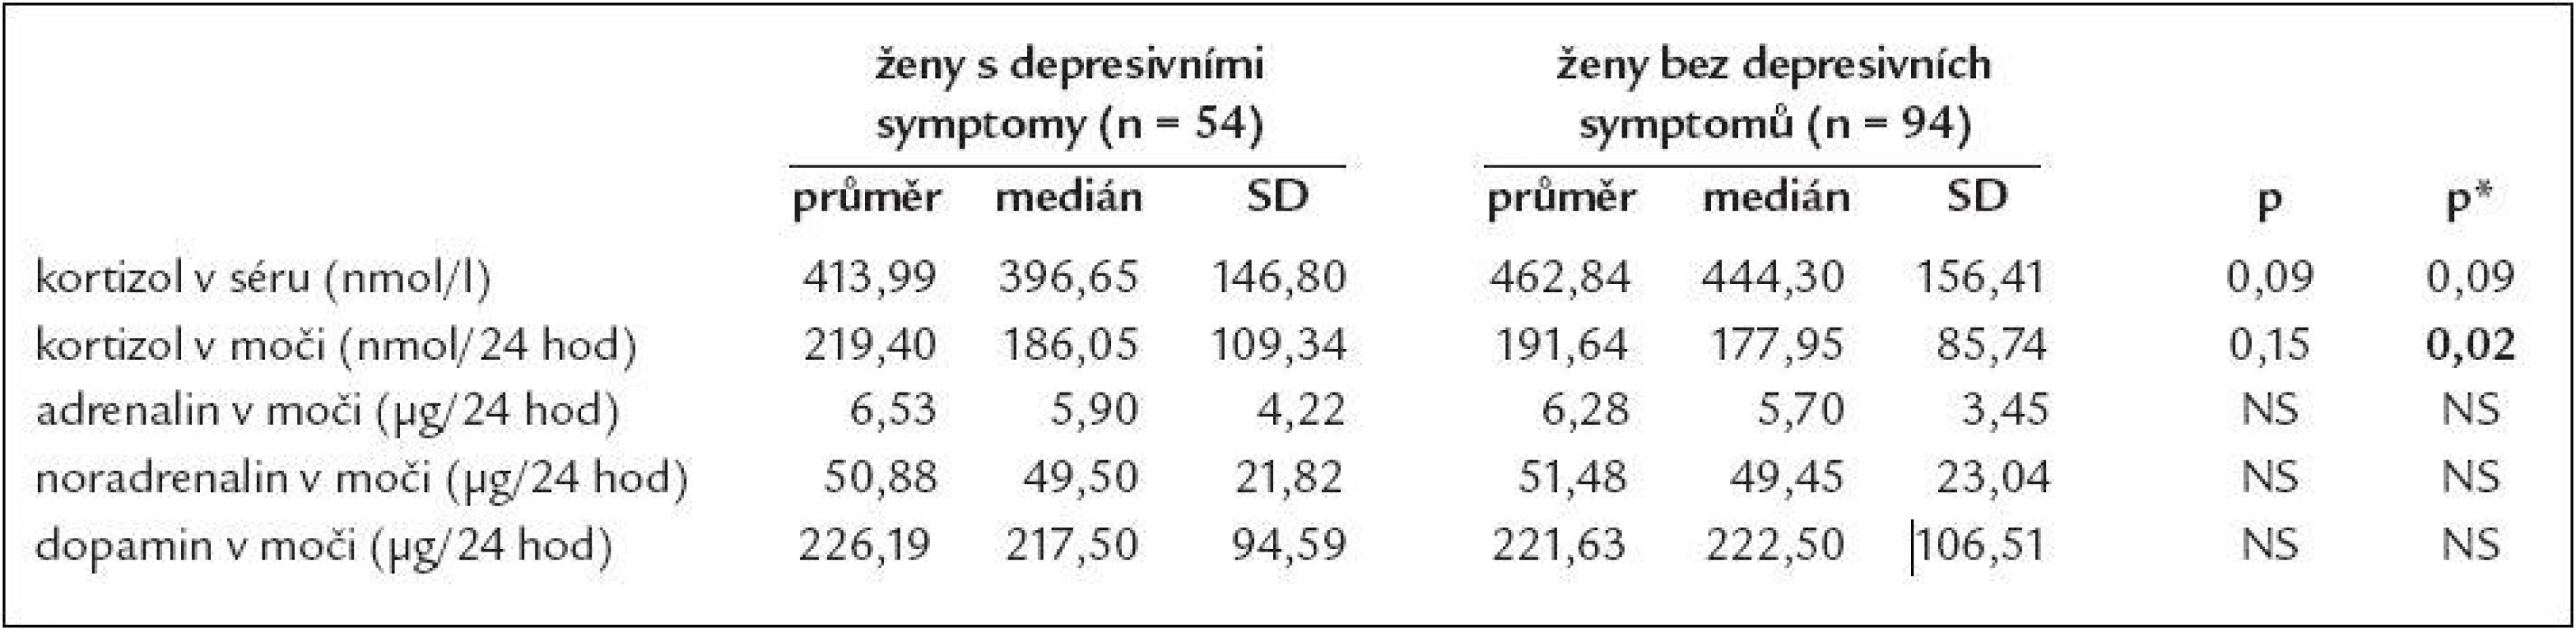 Srovnání některých hormonů v séru a ve sběru moči podle depresivity u žen.